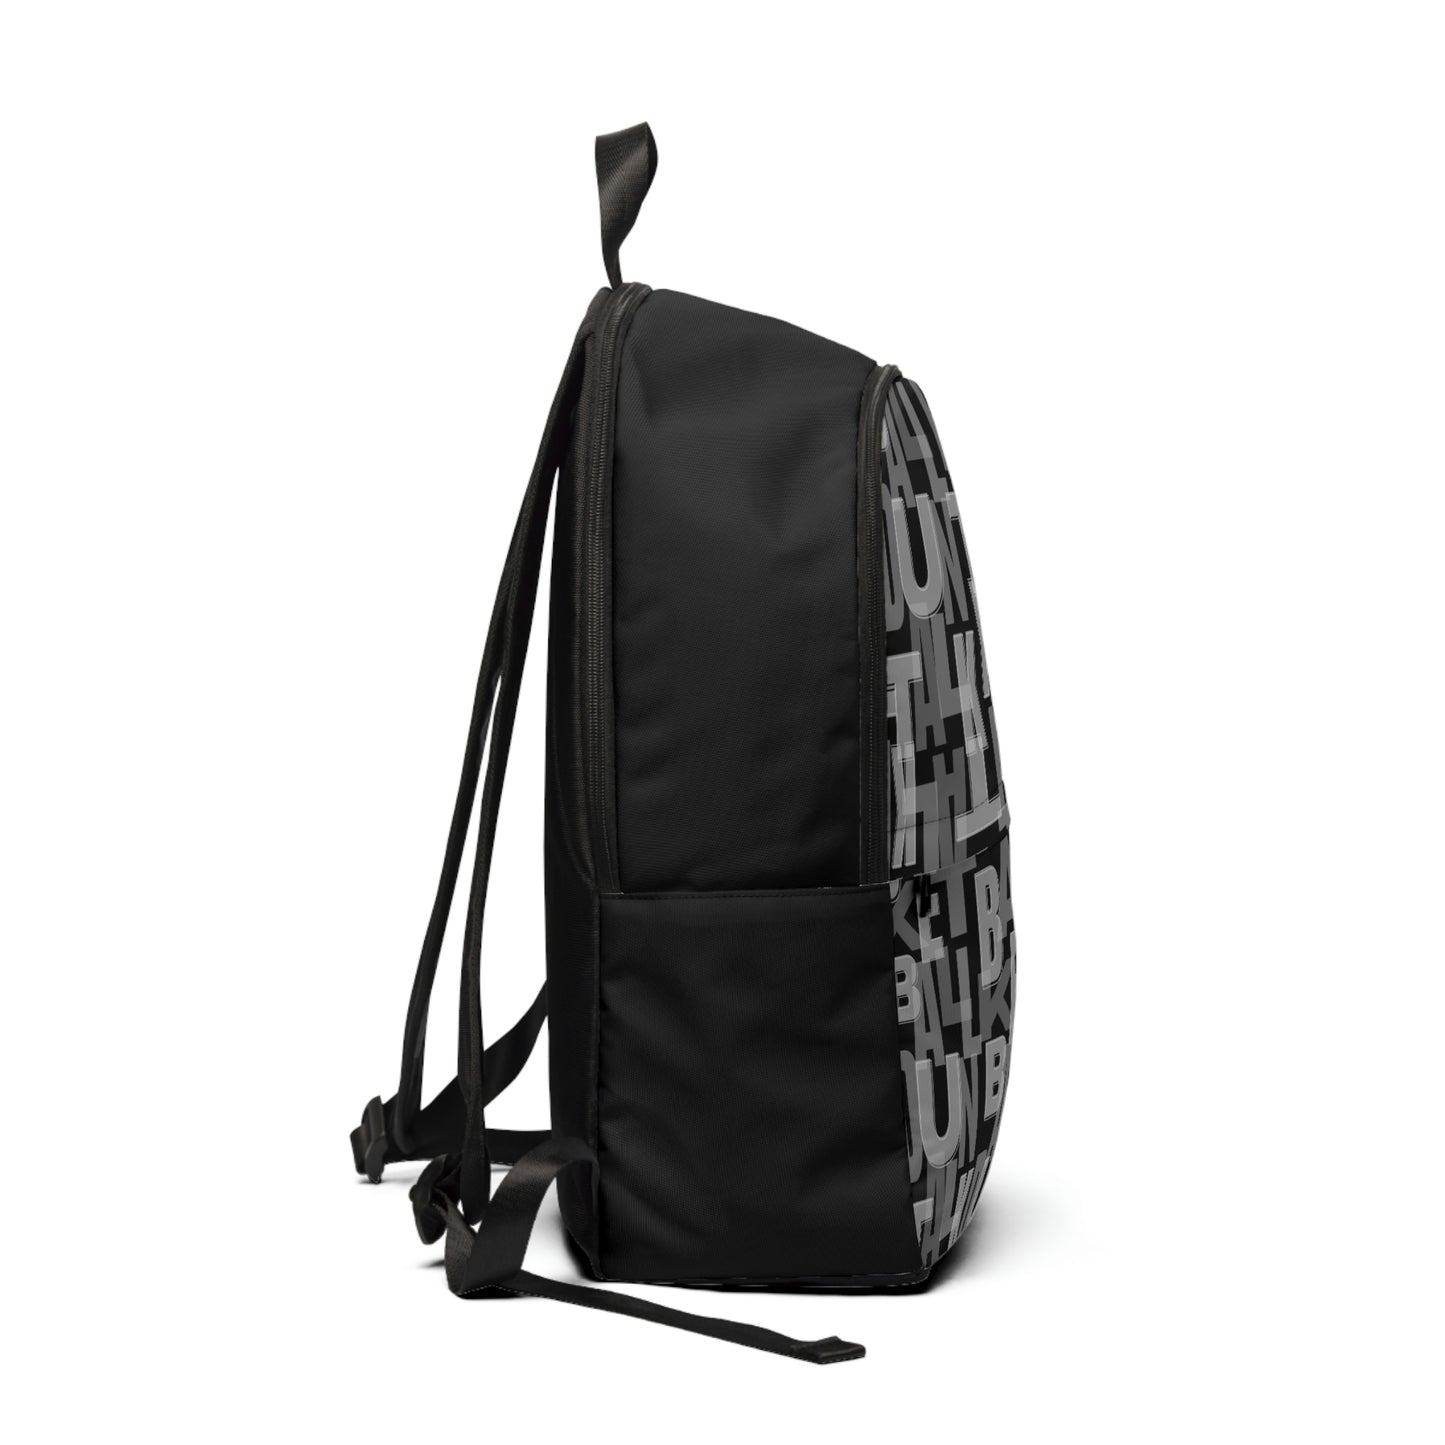 Duntalk "Court Vision" Backpack Small - White/Black